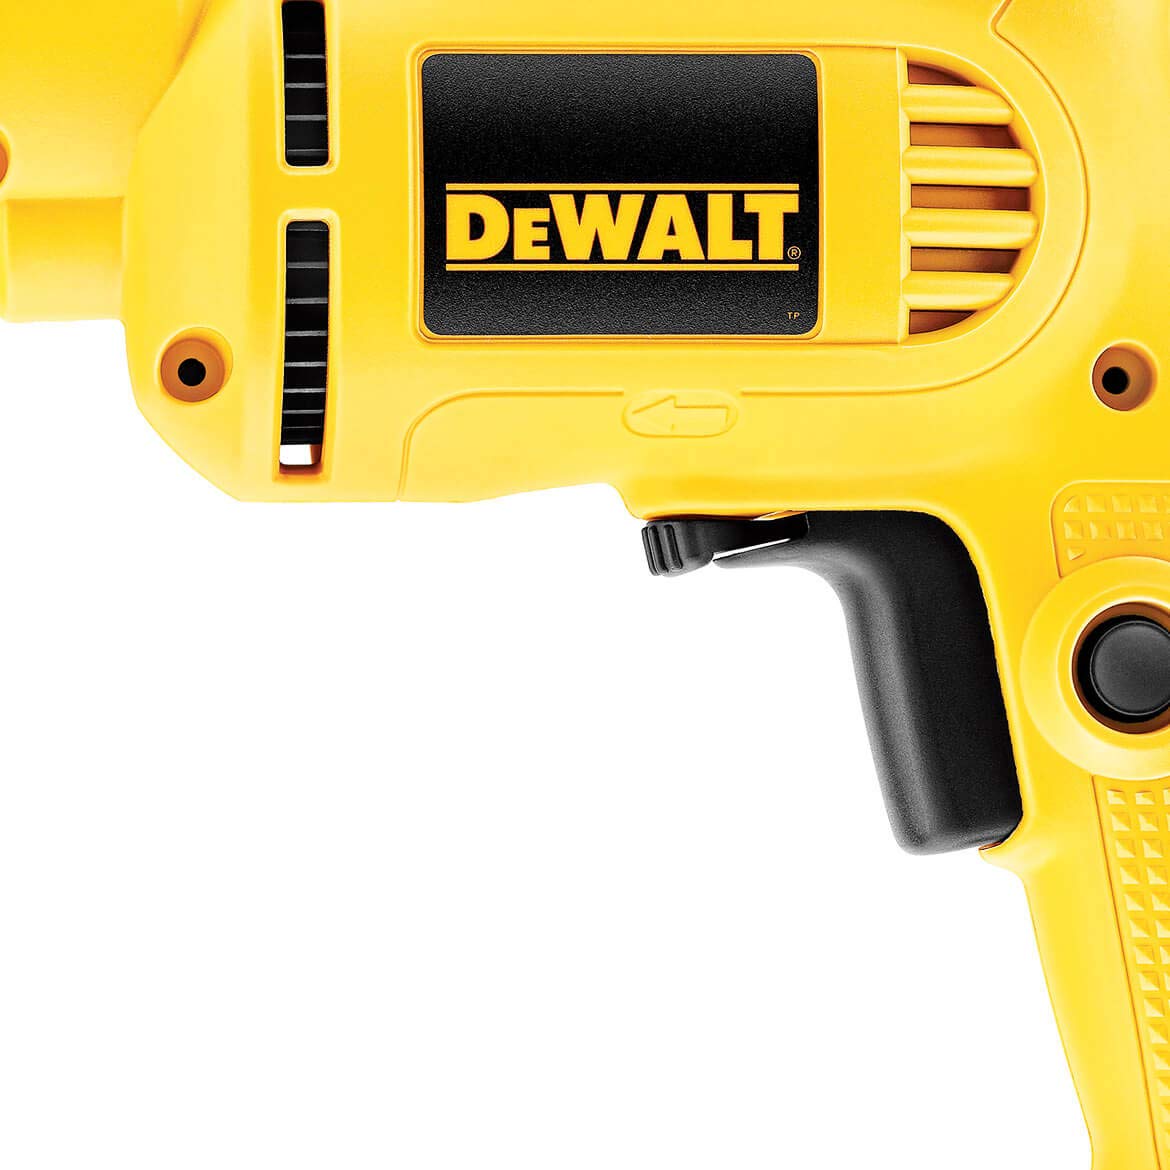 DEWALT Corded Drill with Keyed Chuck, 7.0-Amp, 3/8-Inch (DWE1014)